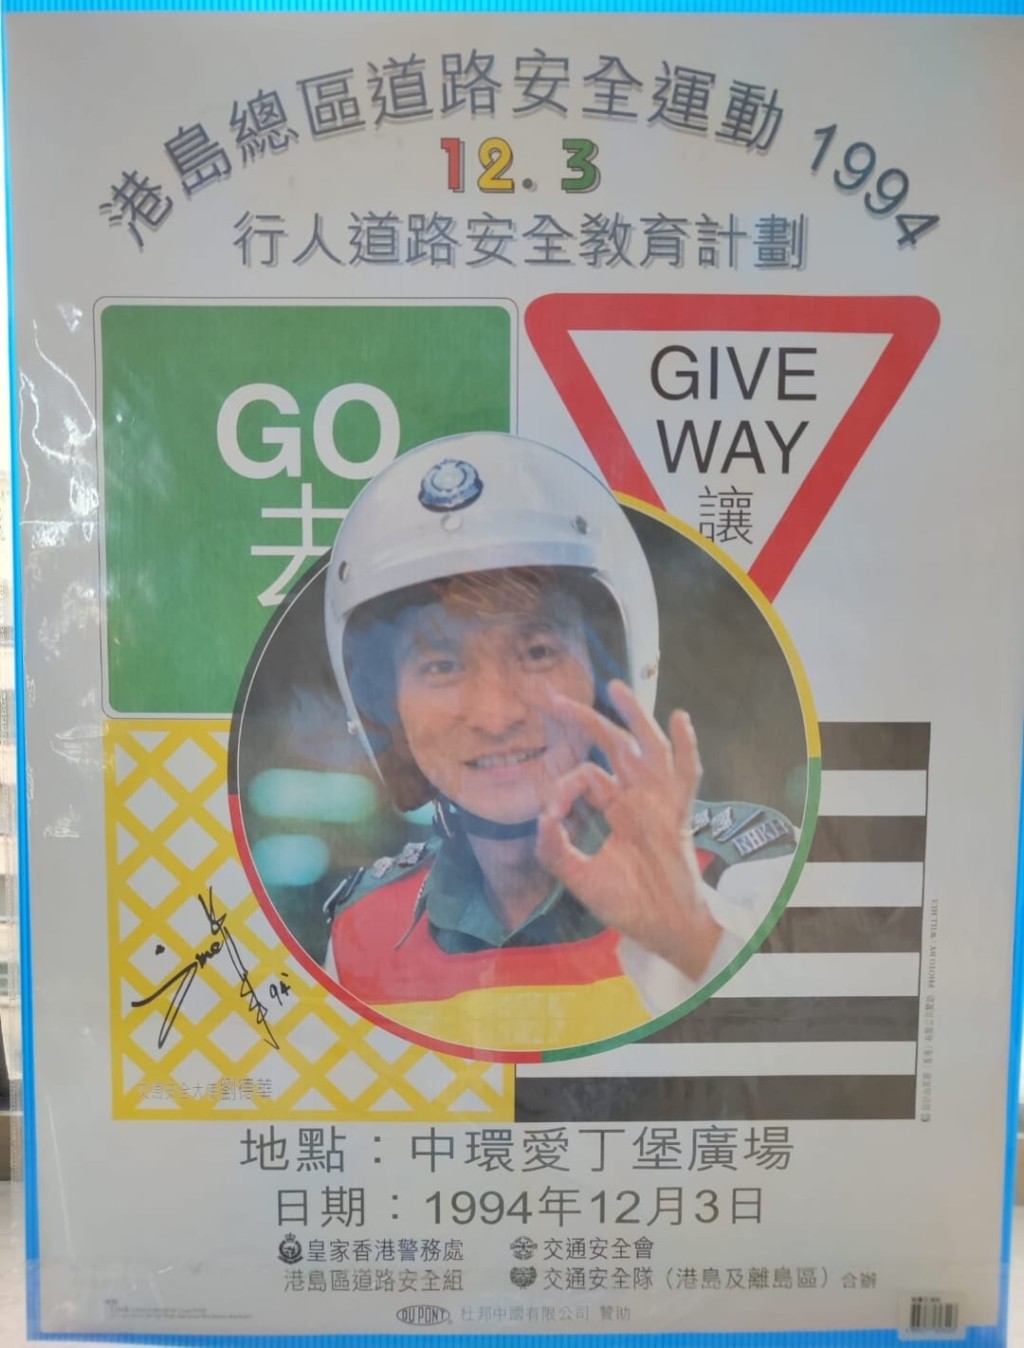 天王劉德華於1994年曾擔任港島總區宣傳道路安全運動大使。